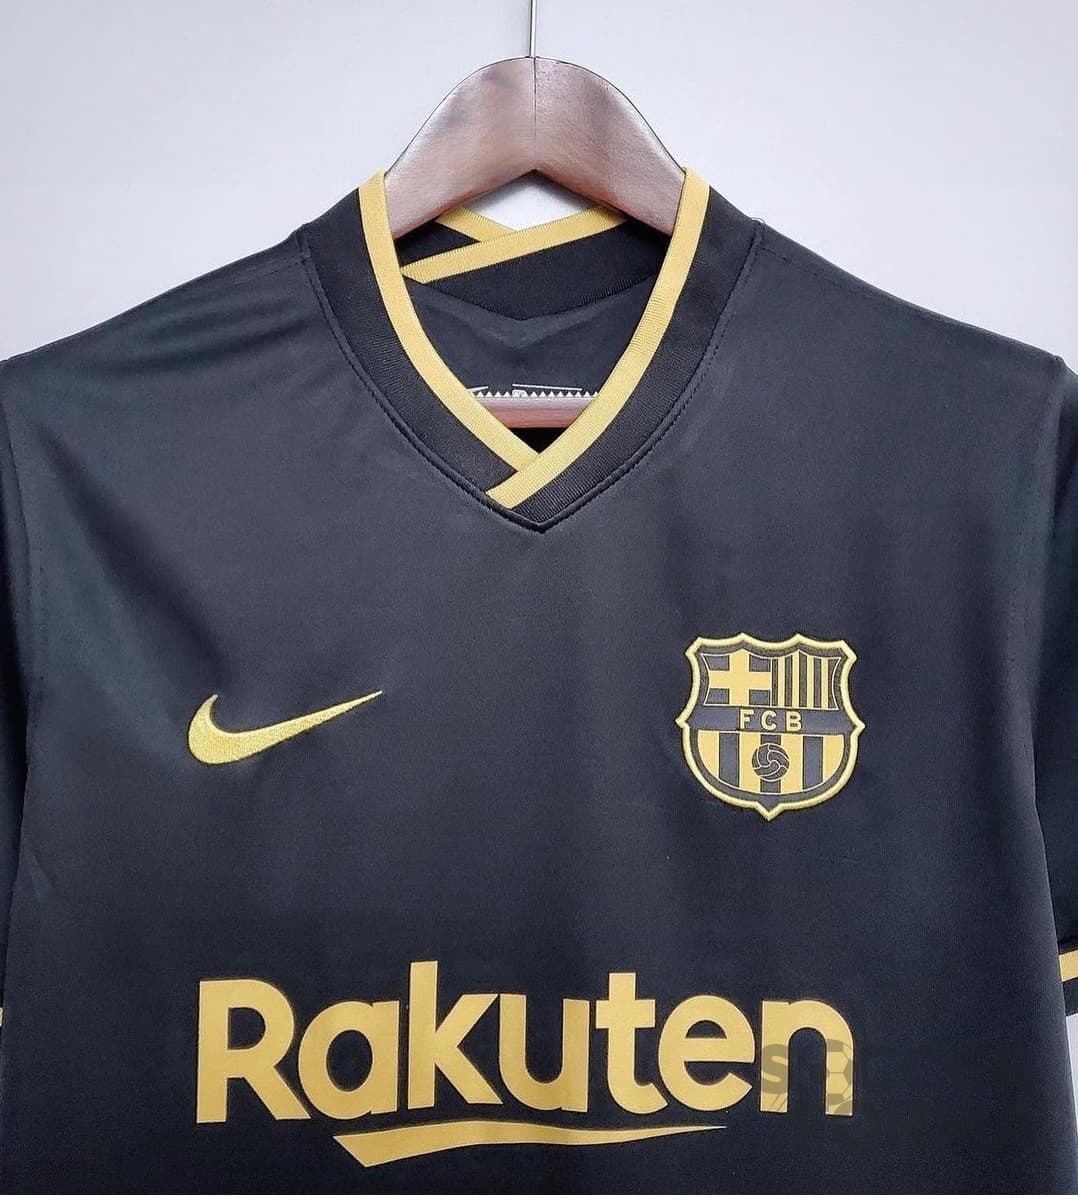 Гостевая футболка Барселона Месси 10 2020-2021 с патчами